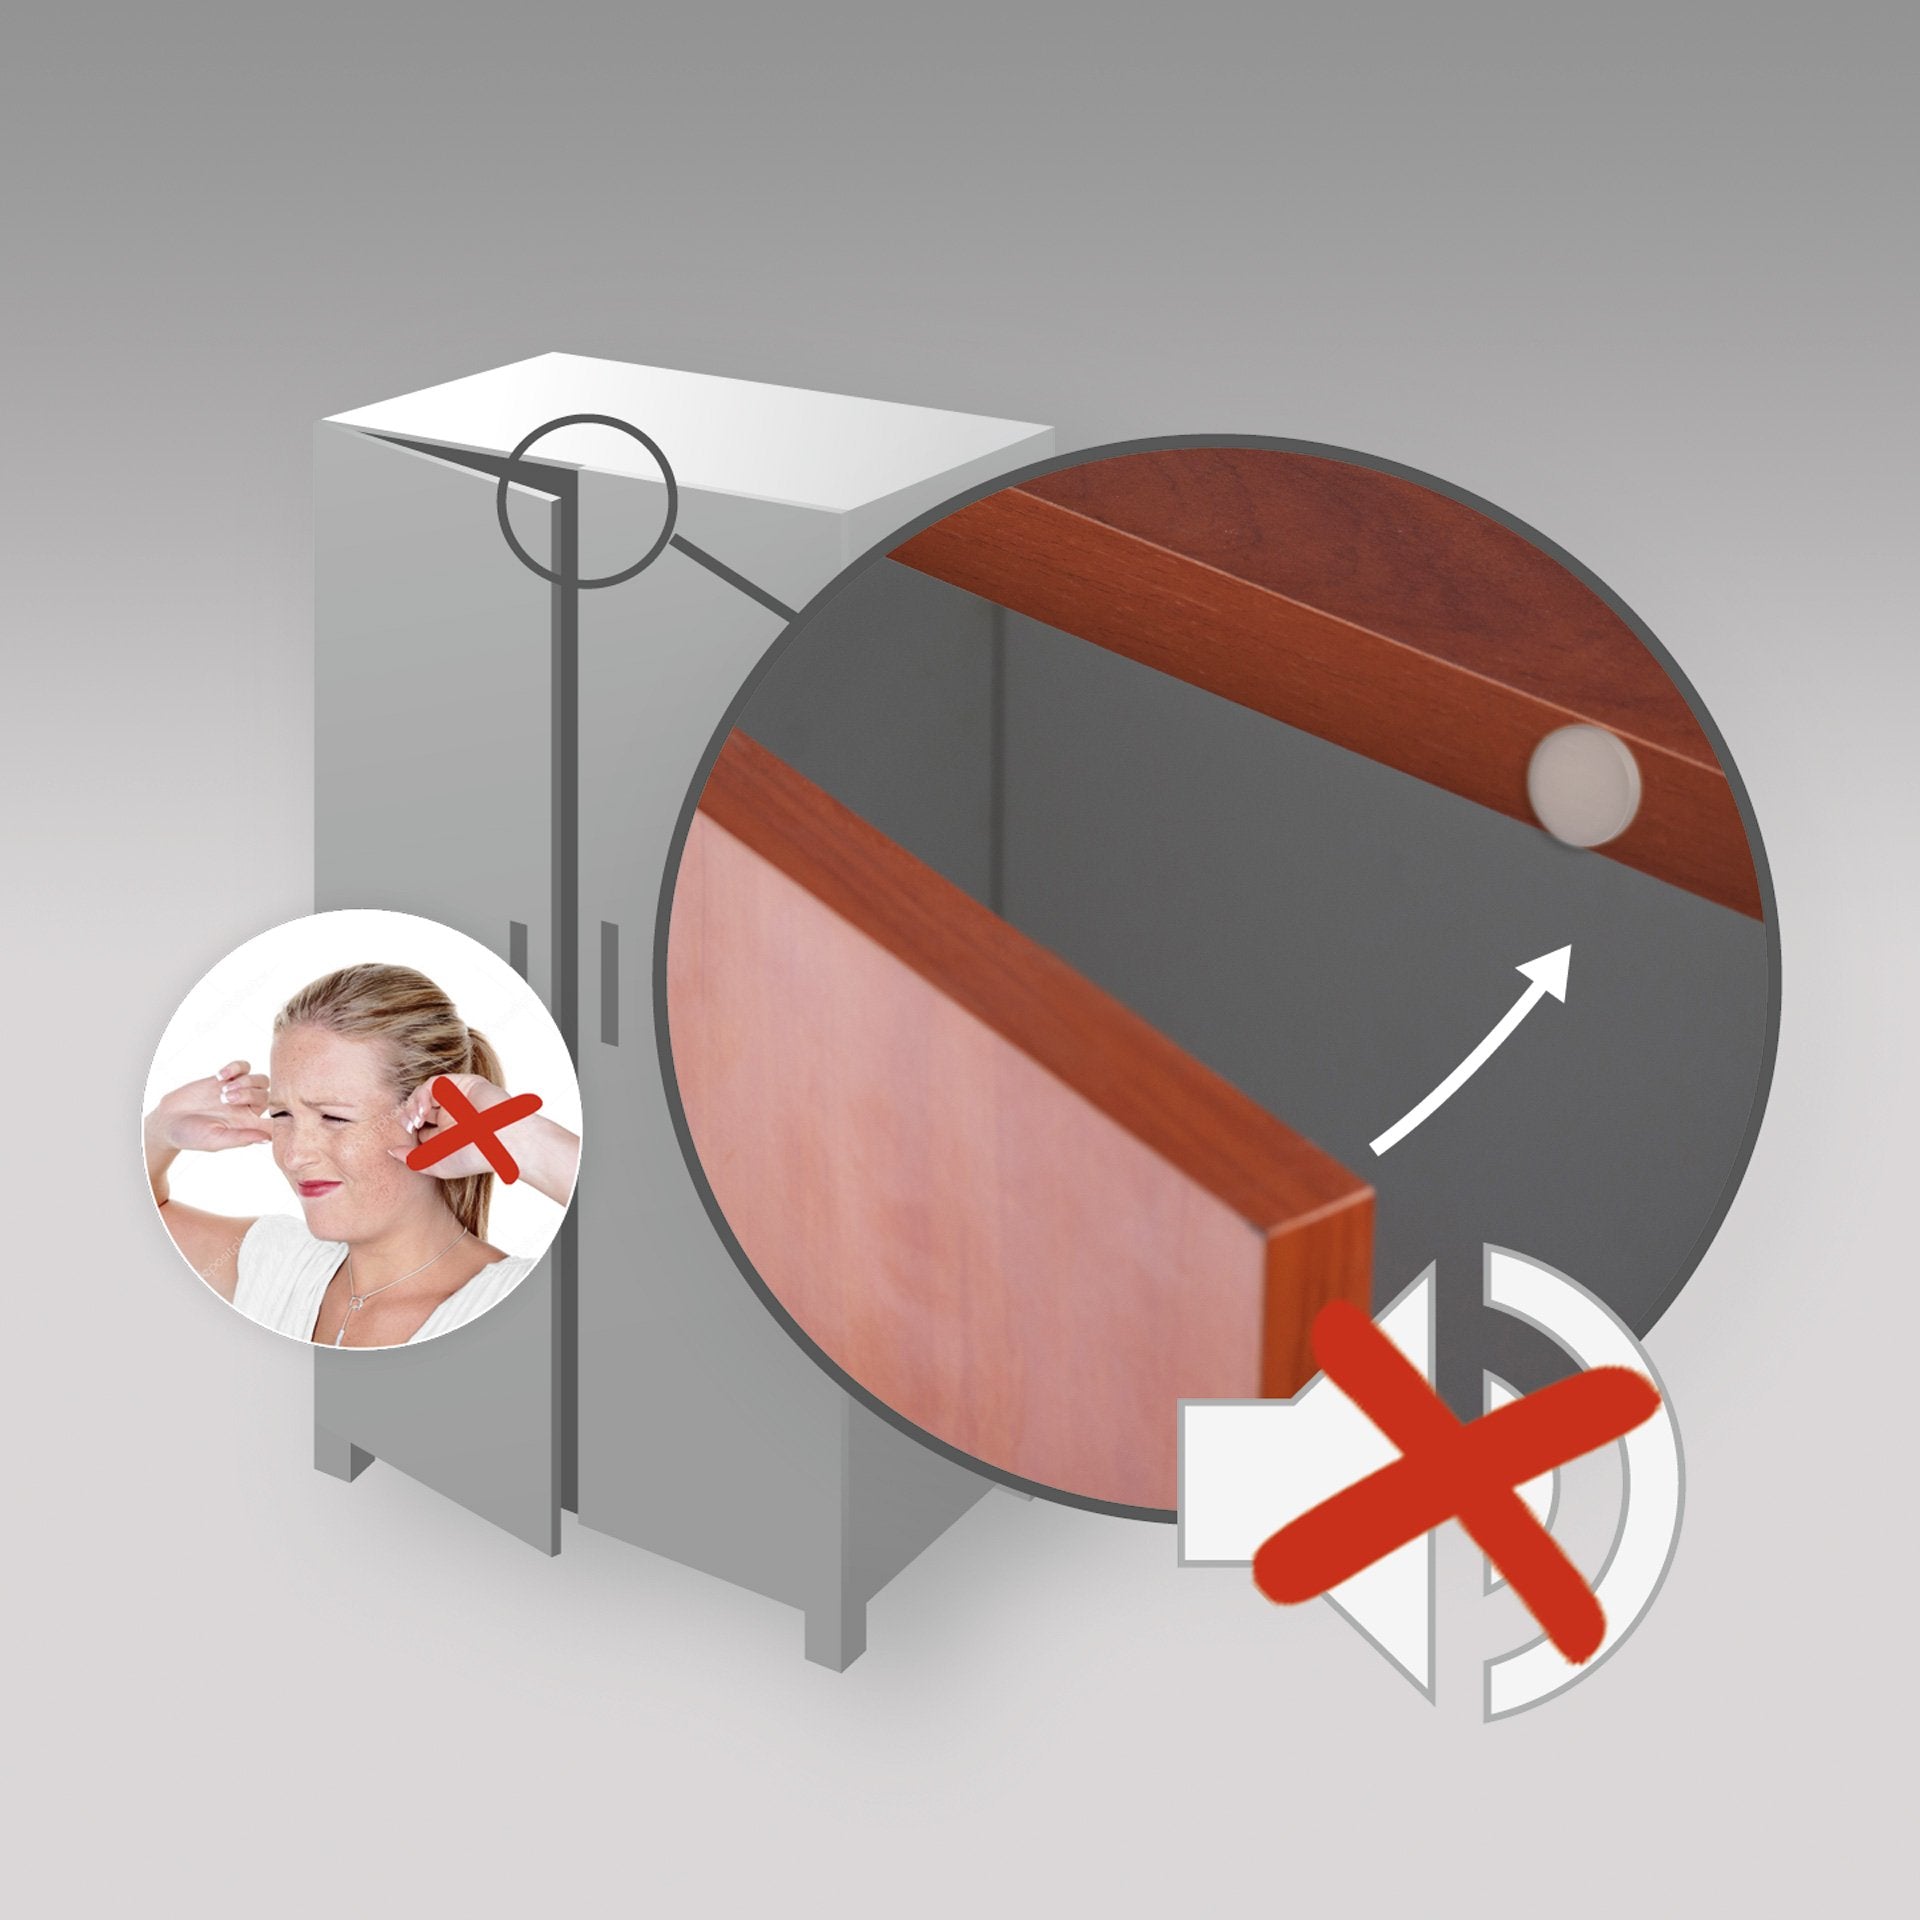 LouMaxx Türstopper Wand selbstklebend oder zum Schrauben – 22teiliges Set weiße Wandstopper selbstklebend und transparente Elastikpuffer